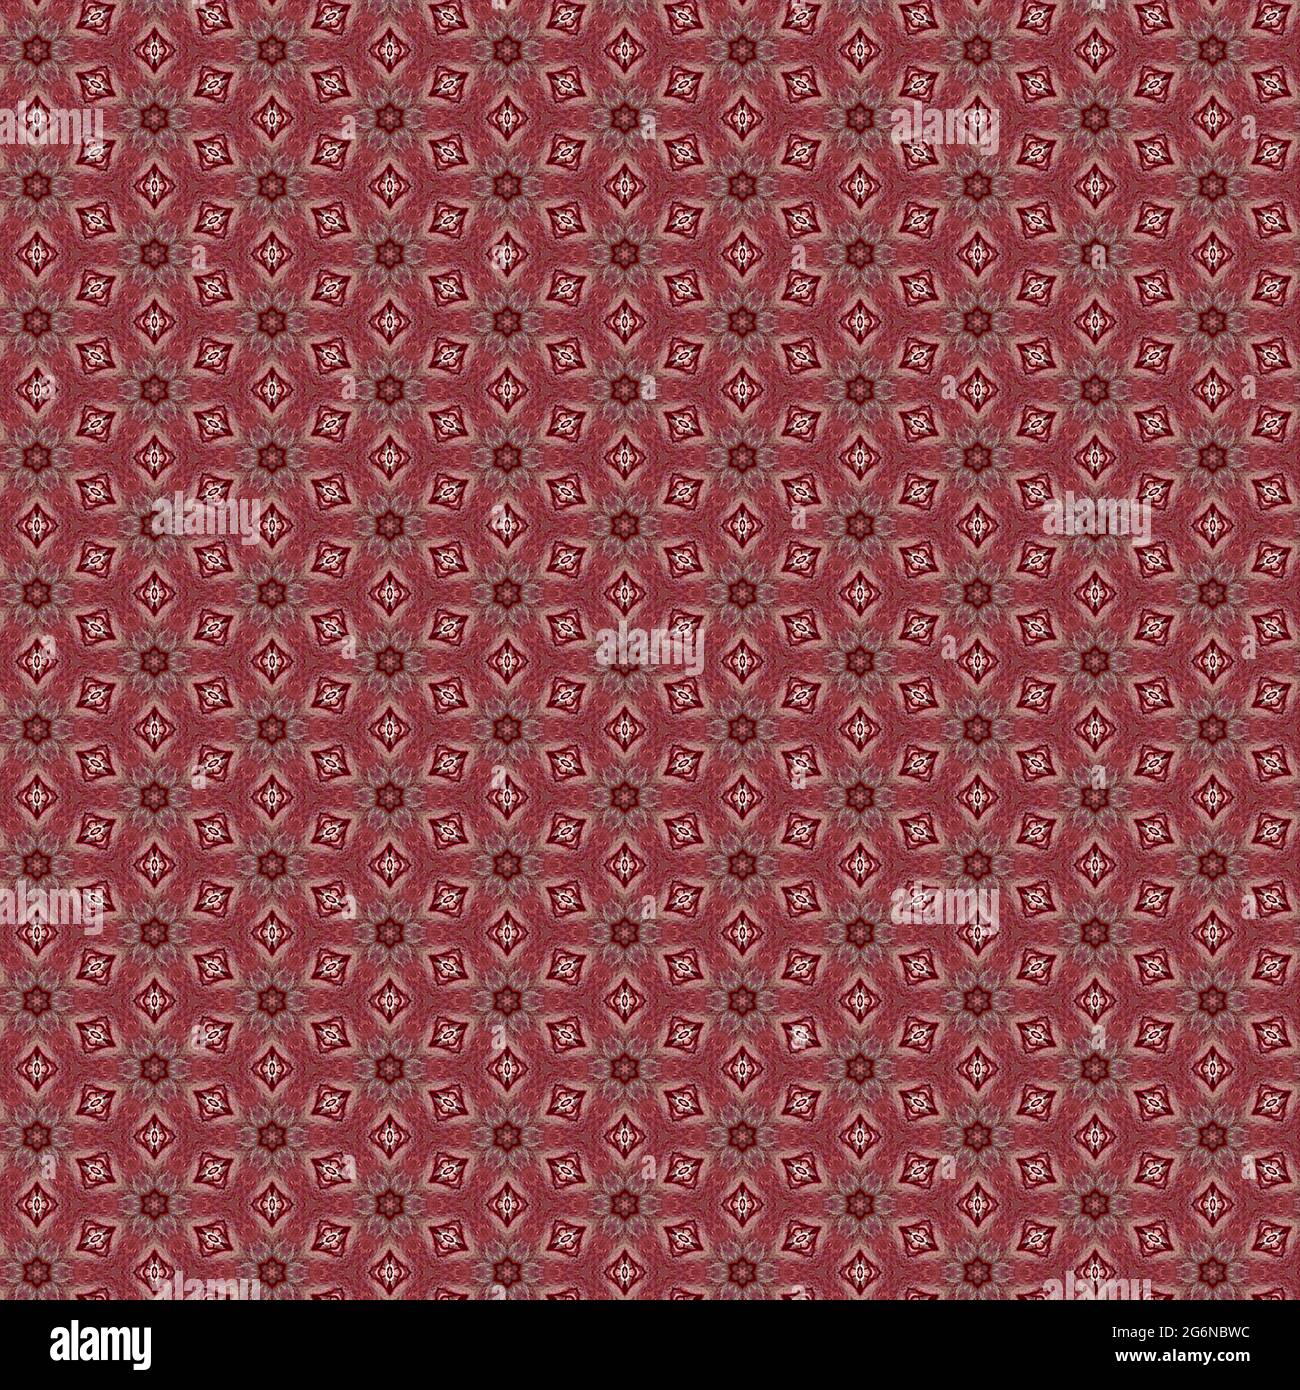 Vintage Red Textur Hintergrund. Rote Muster Hintergrund für Stoff, Mate, Geschenkpapier, Veranstaltungen, Hochzeiten, kachel. Stockfoto